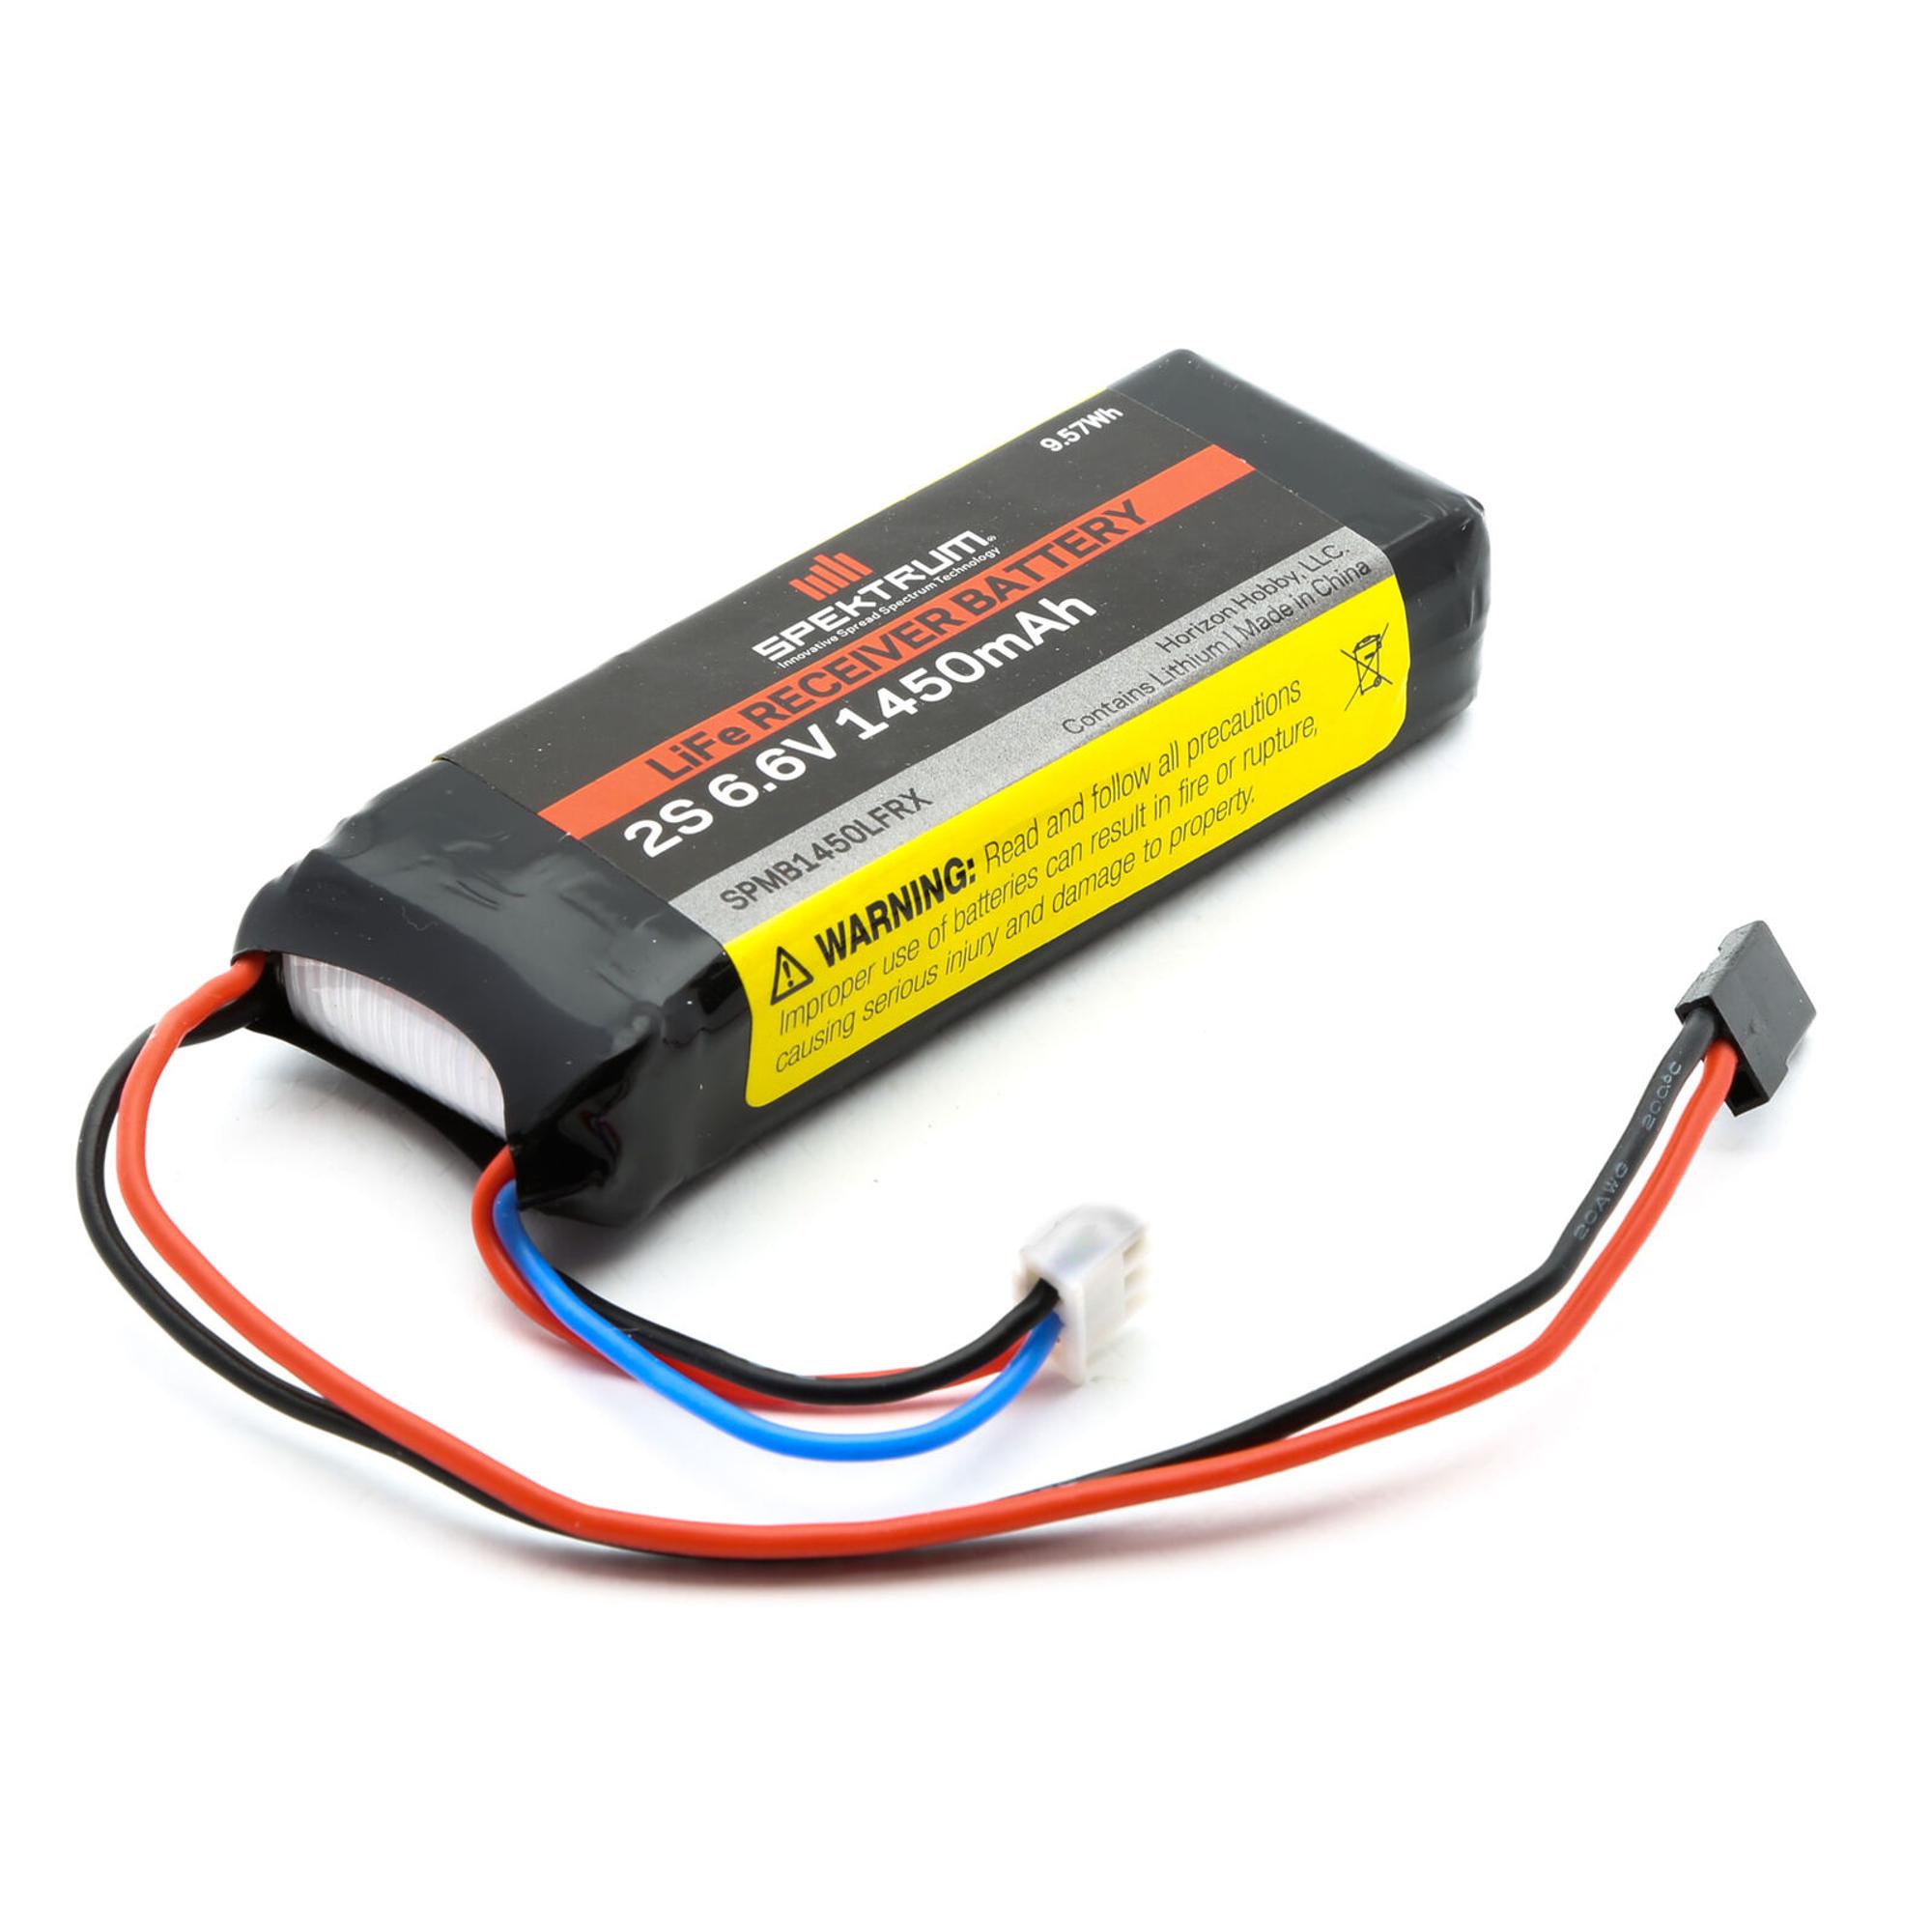 Spektrum 6.6v 1450mAh 2S LiFe Receiver Battery (Universal Receiver)